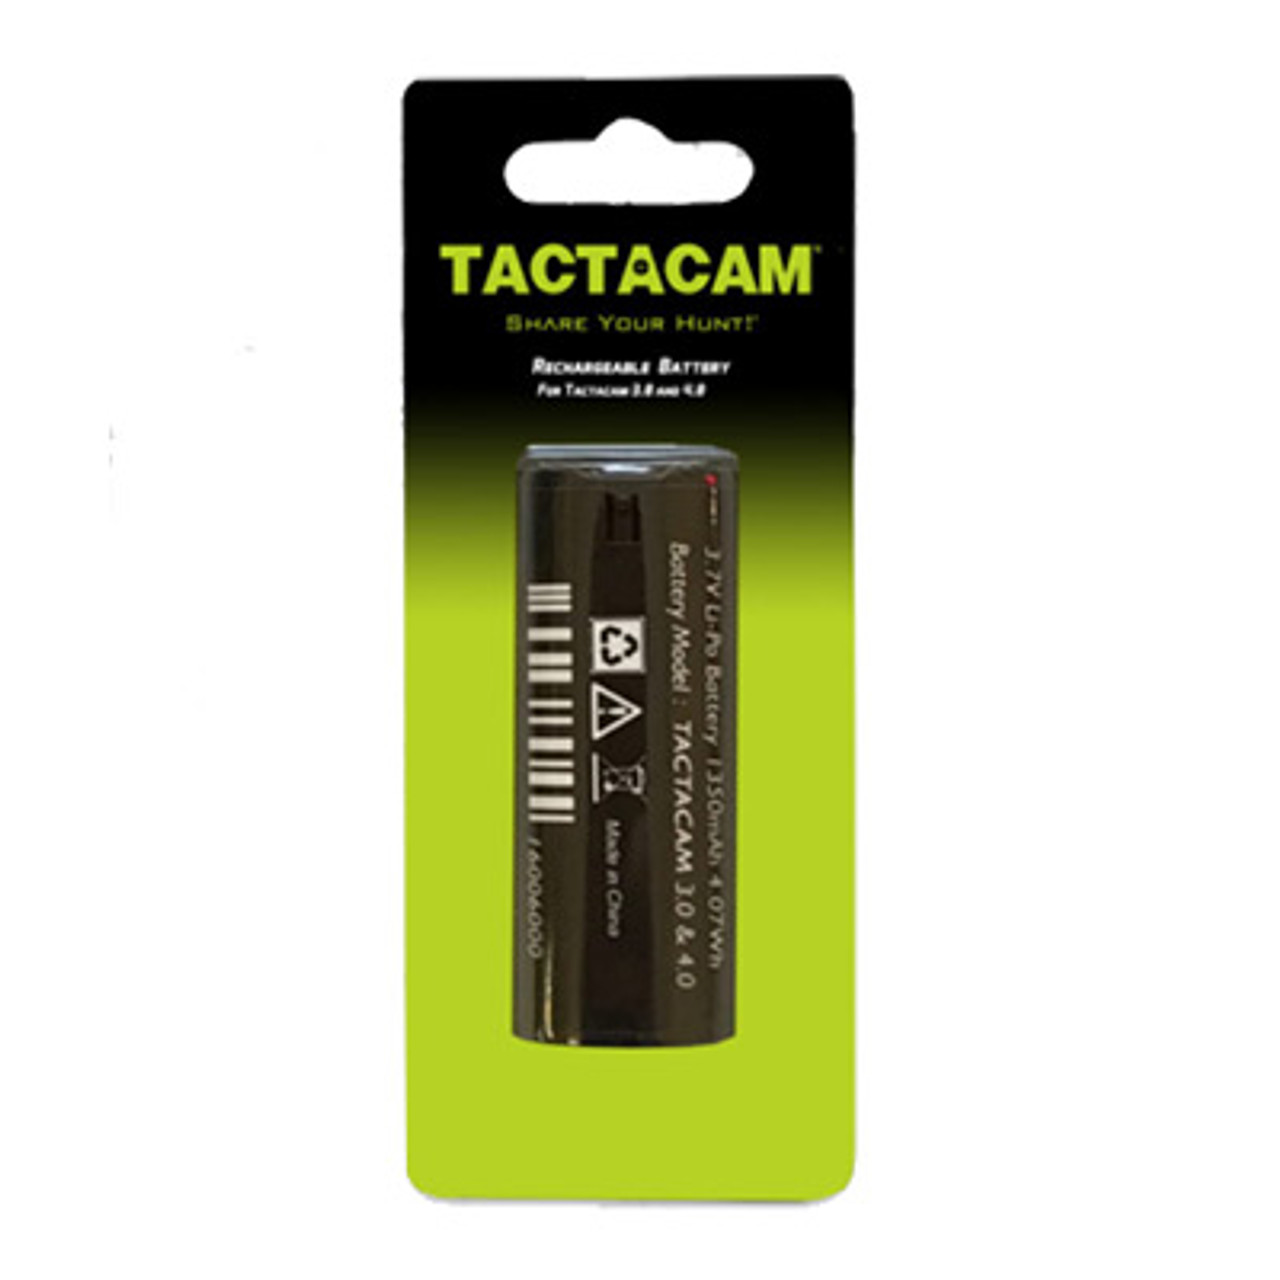 Rechargable Battery for Tactacam 5.0